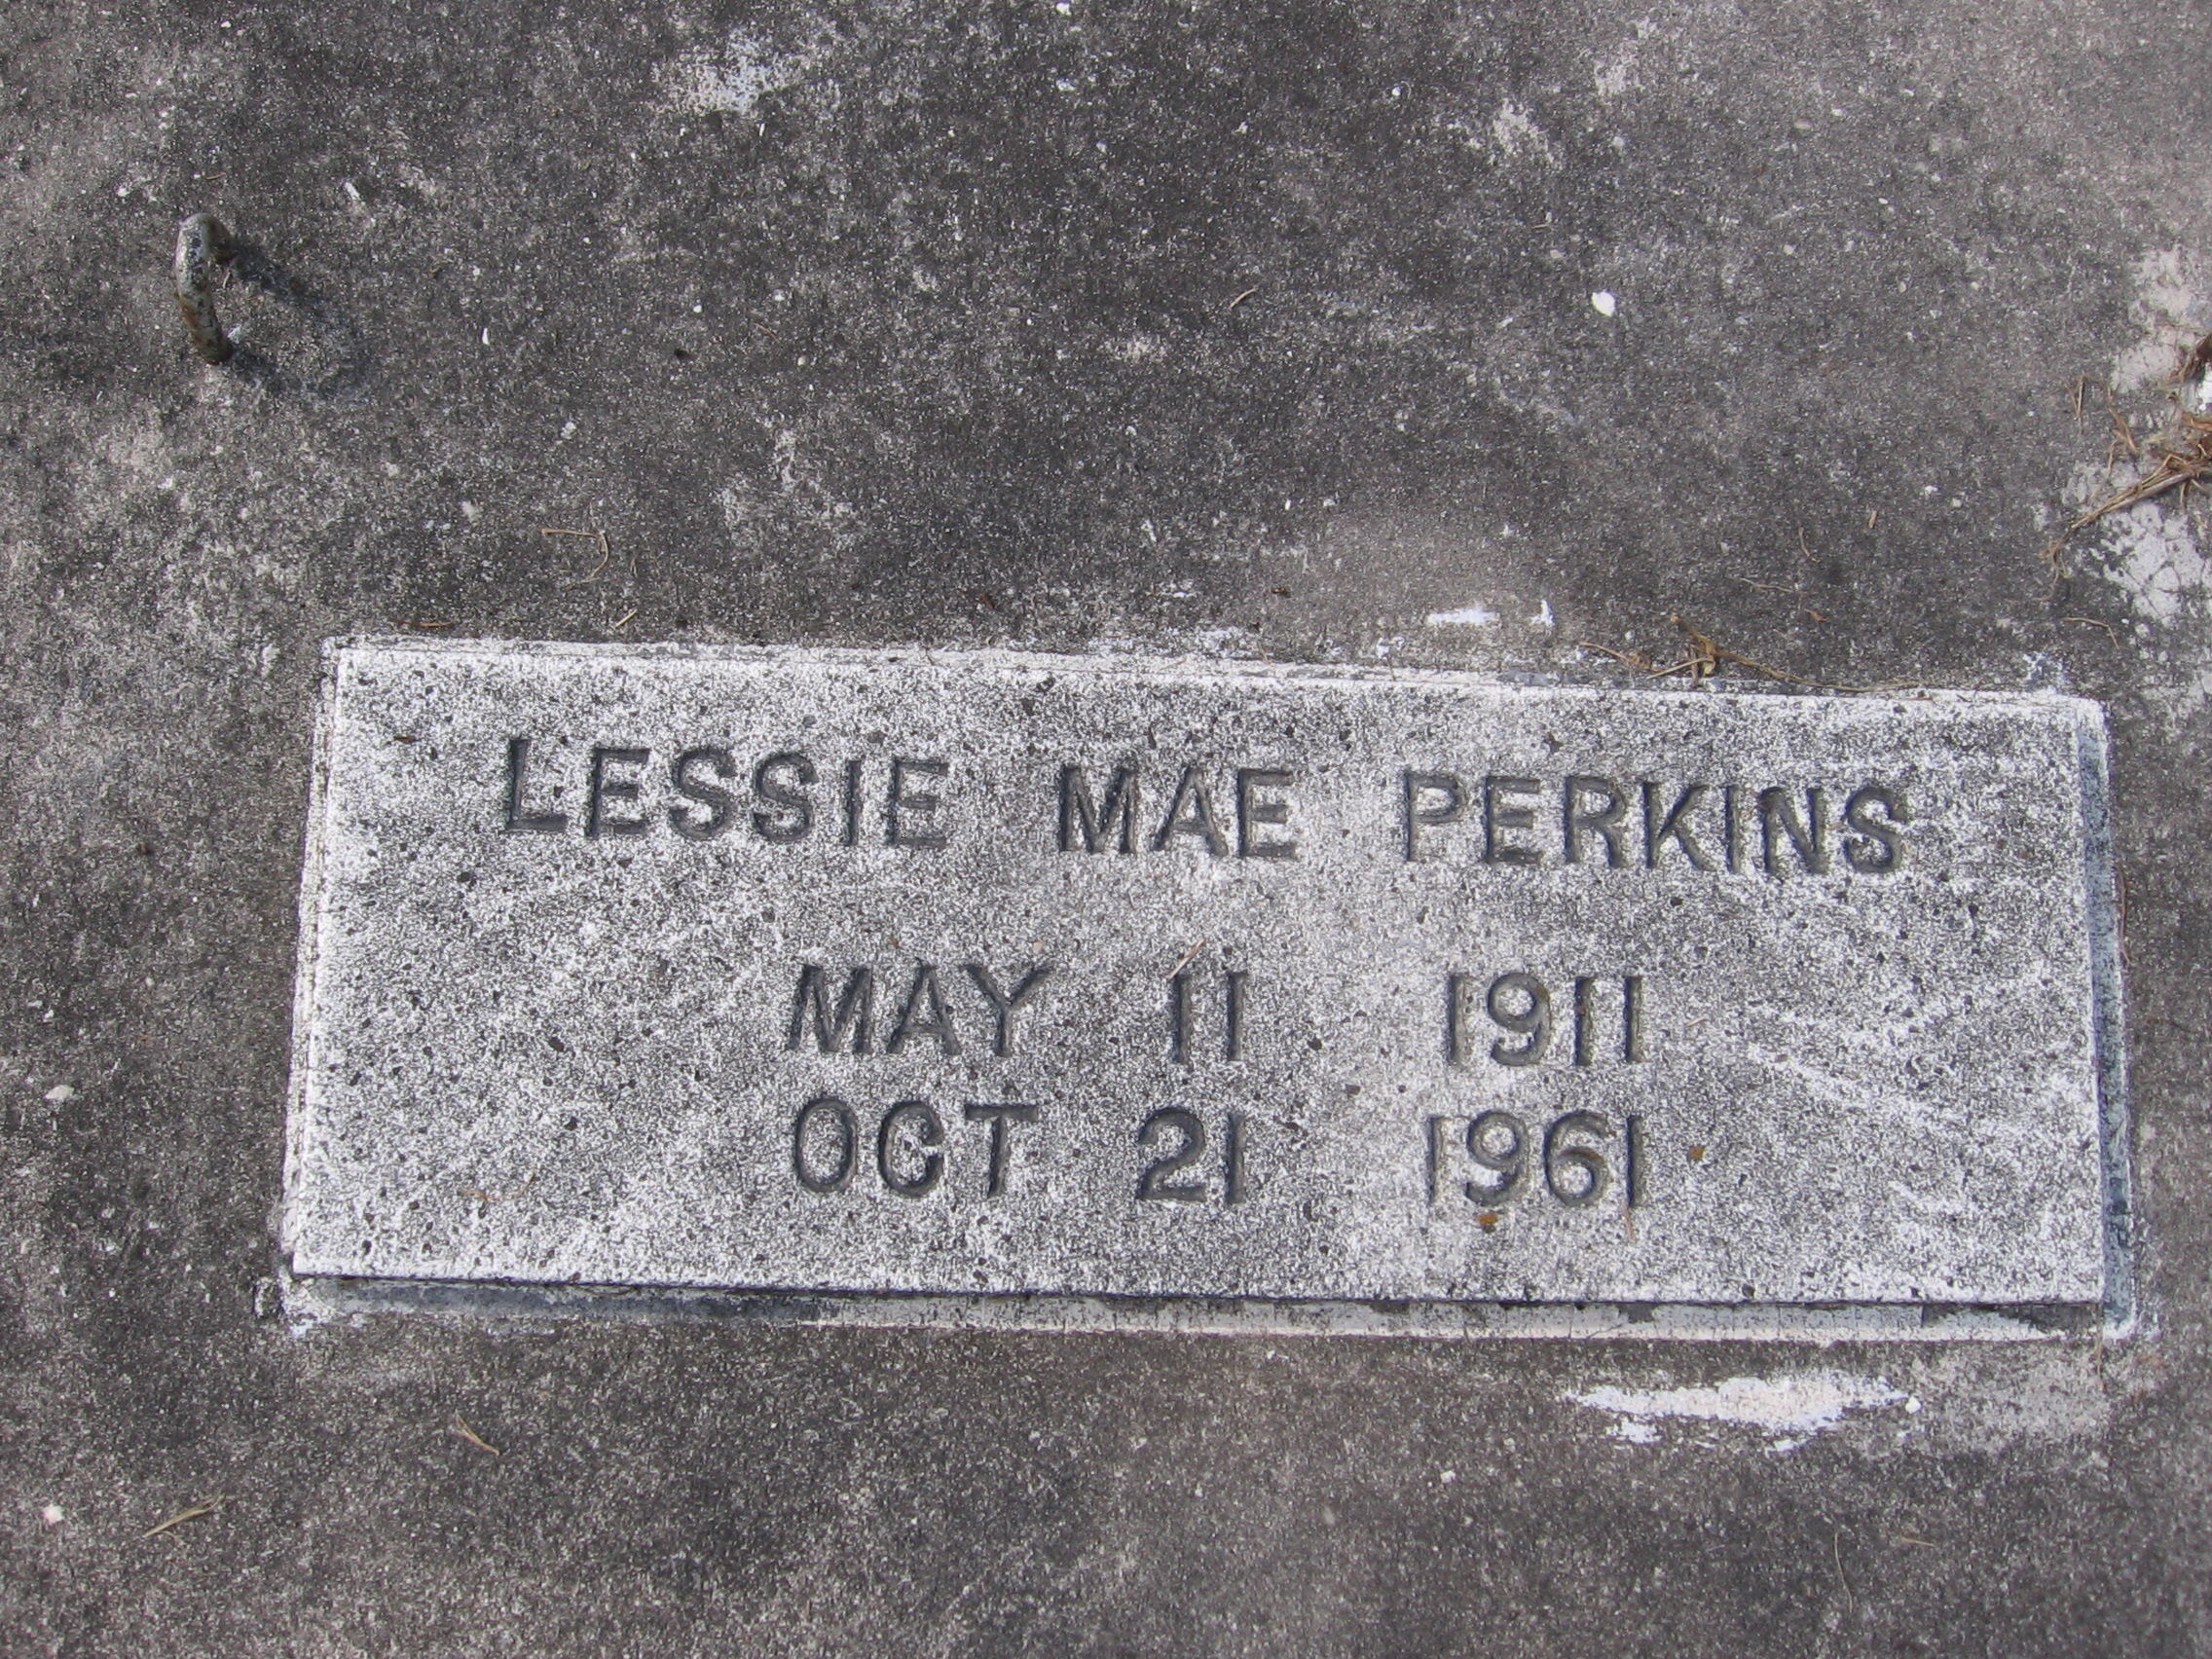 Lessie Mae Perkins